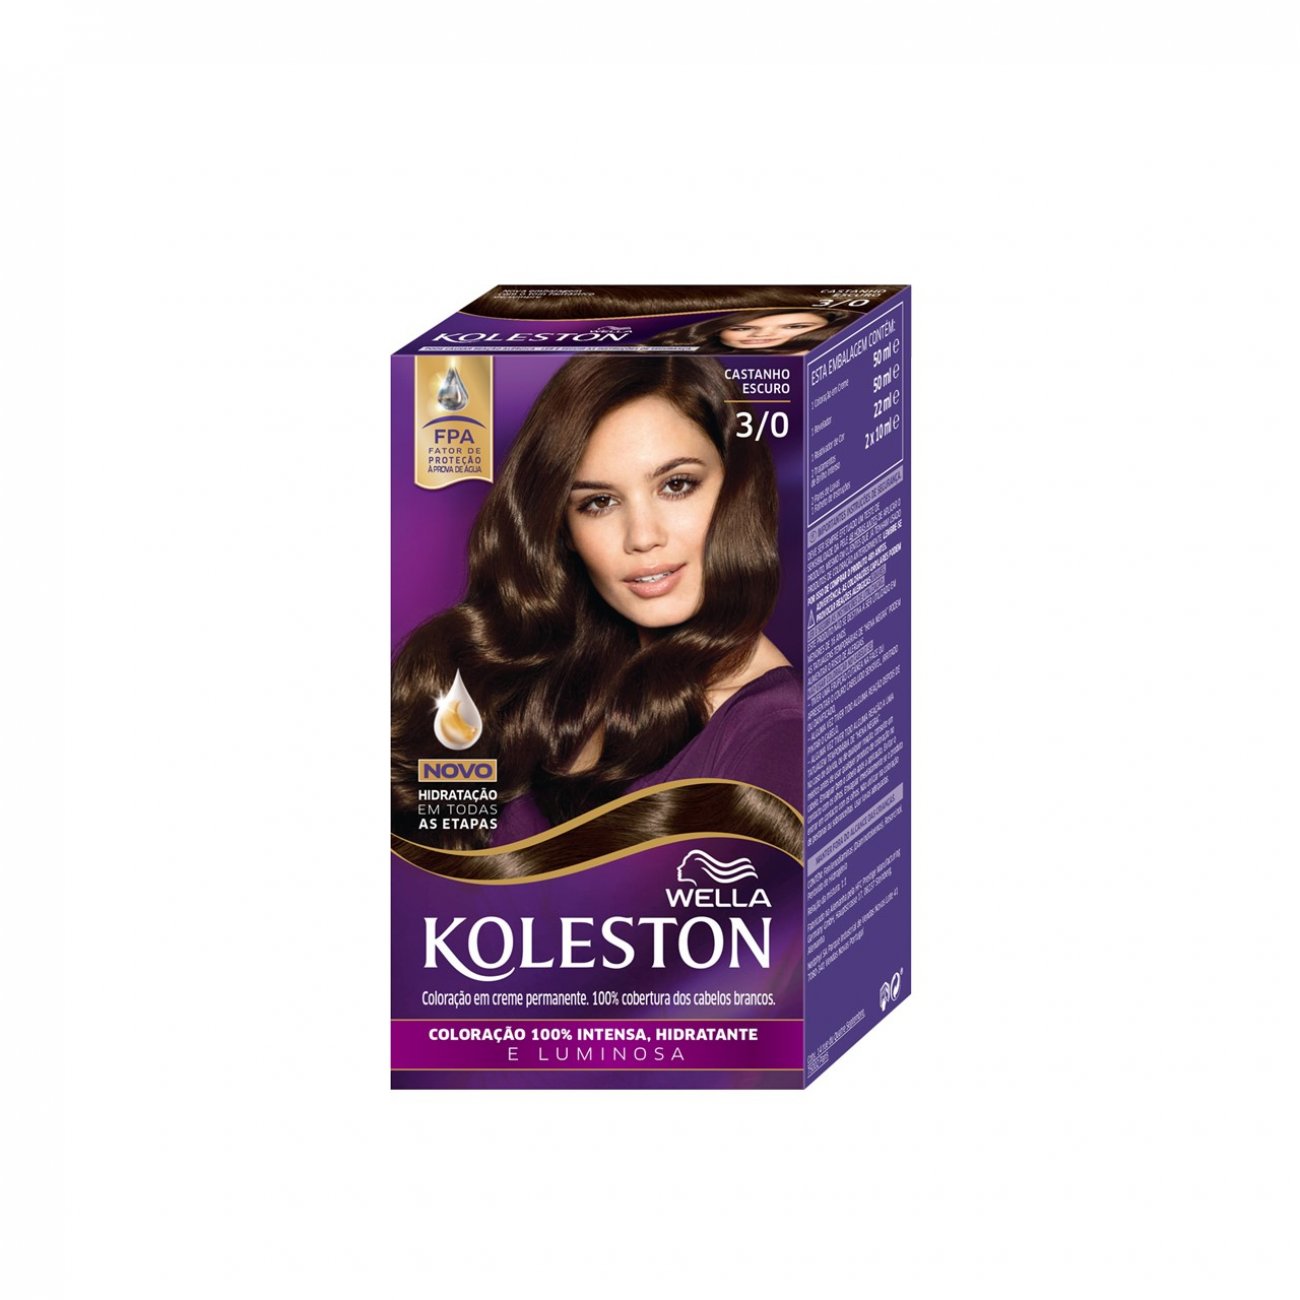 Buy Wella Koleston 3/0 Dark Brown Permanent Hair Color · Costa Rica